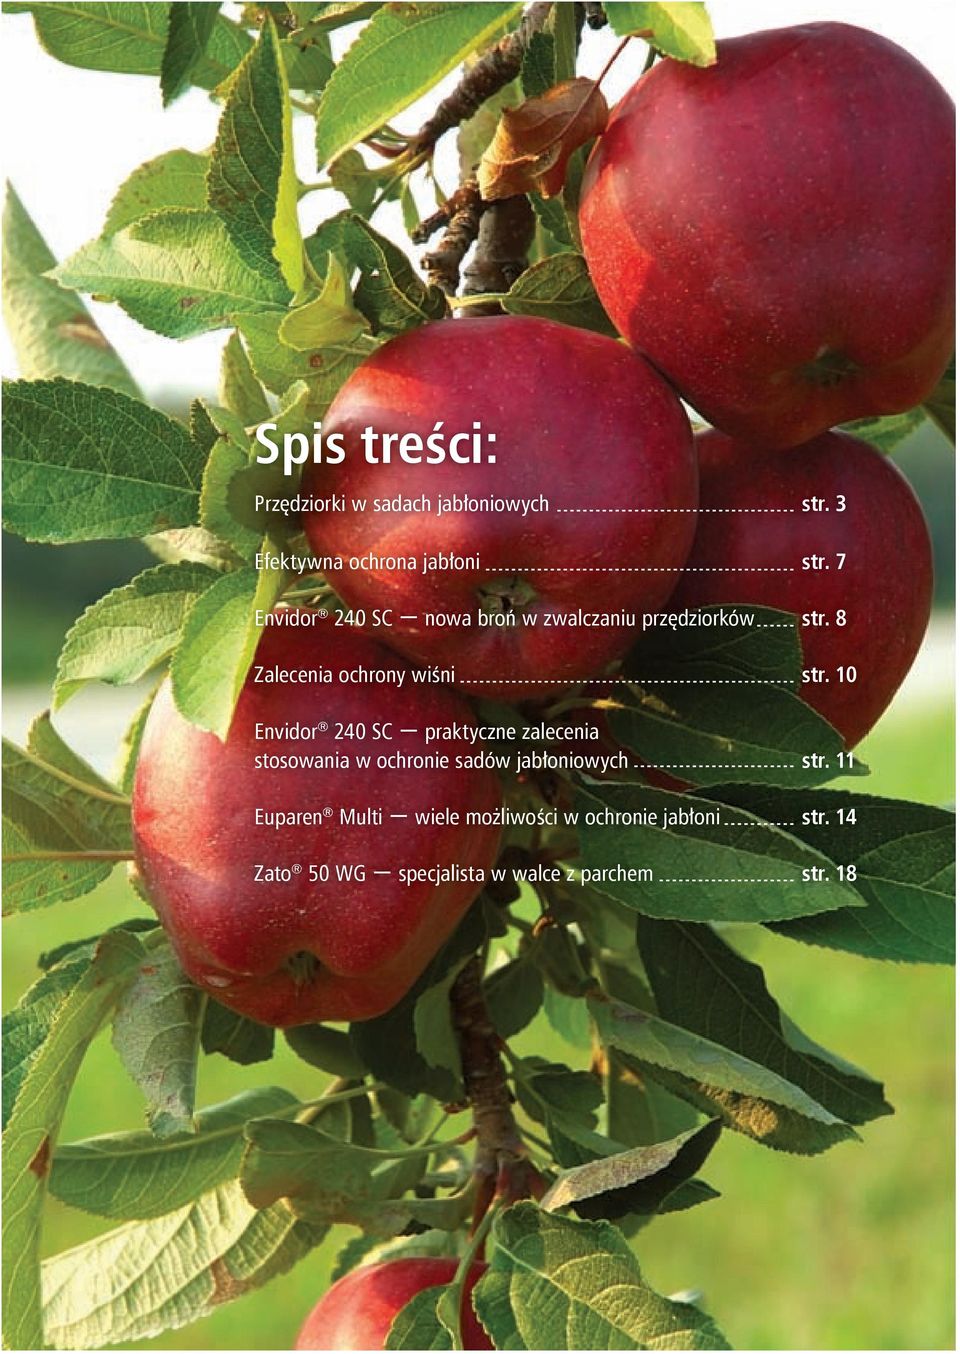 10 Envidor 240 SC praktyczne zalecenia stosowania w ochronie sadów jabłoniowych str.